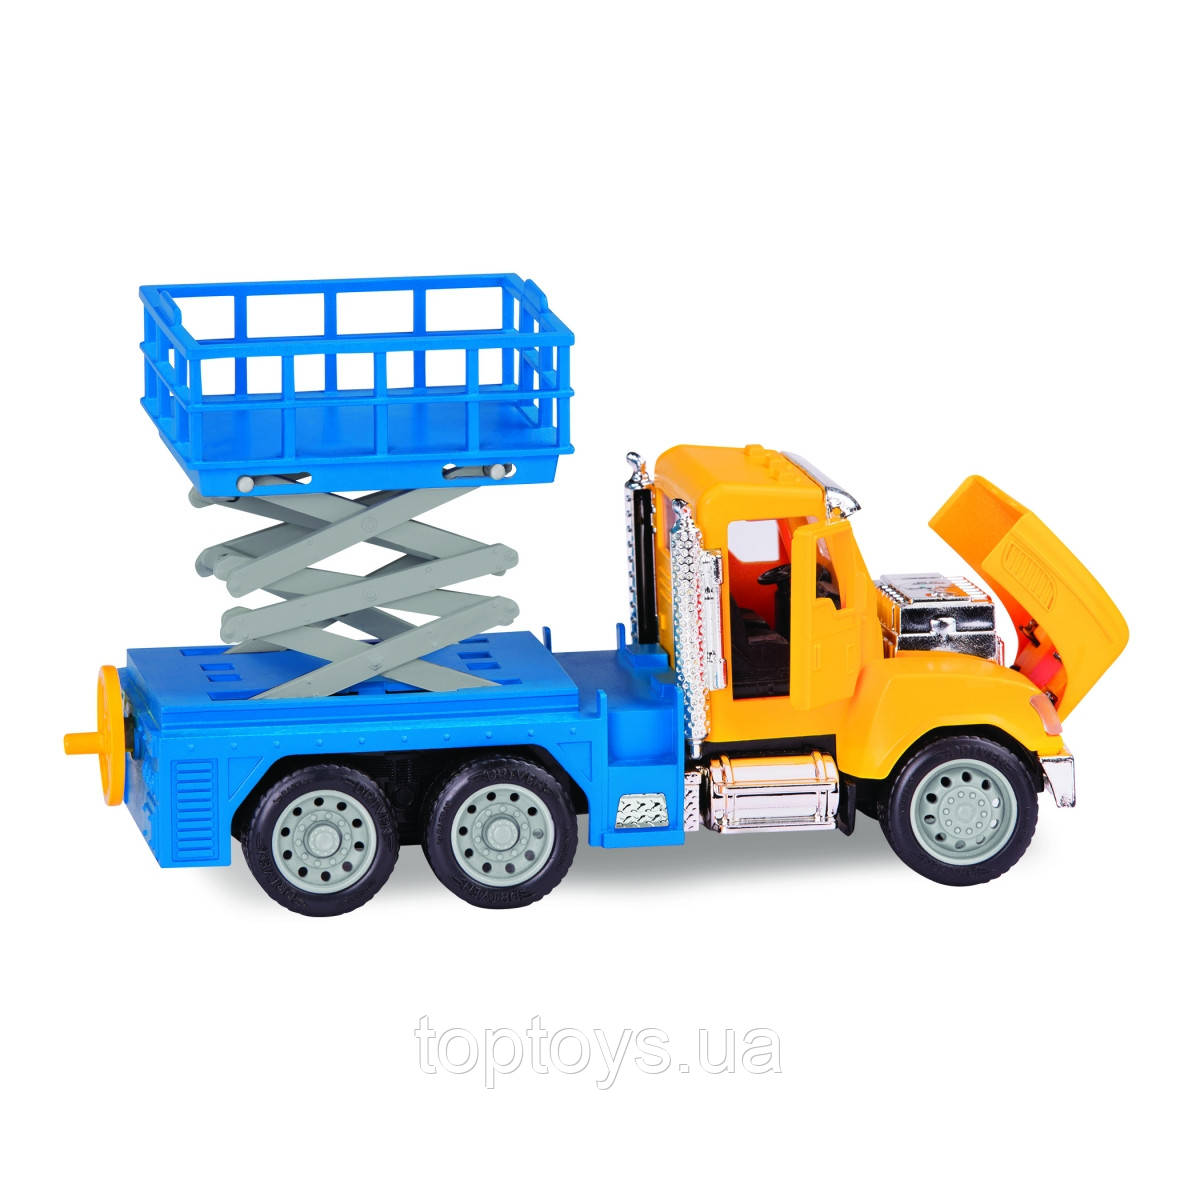 Іграшкова спеціалізована техніка Driven Вантажівка підйомник (WH1074Z)